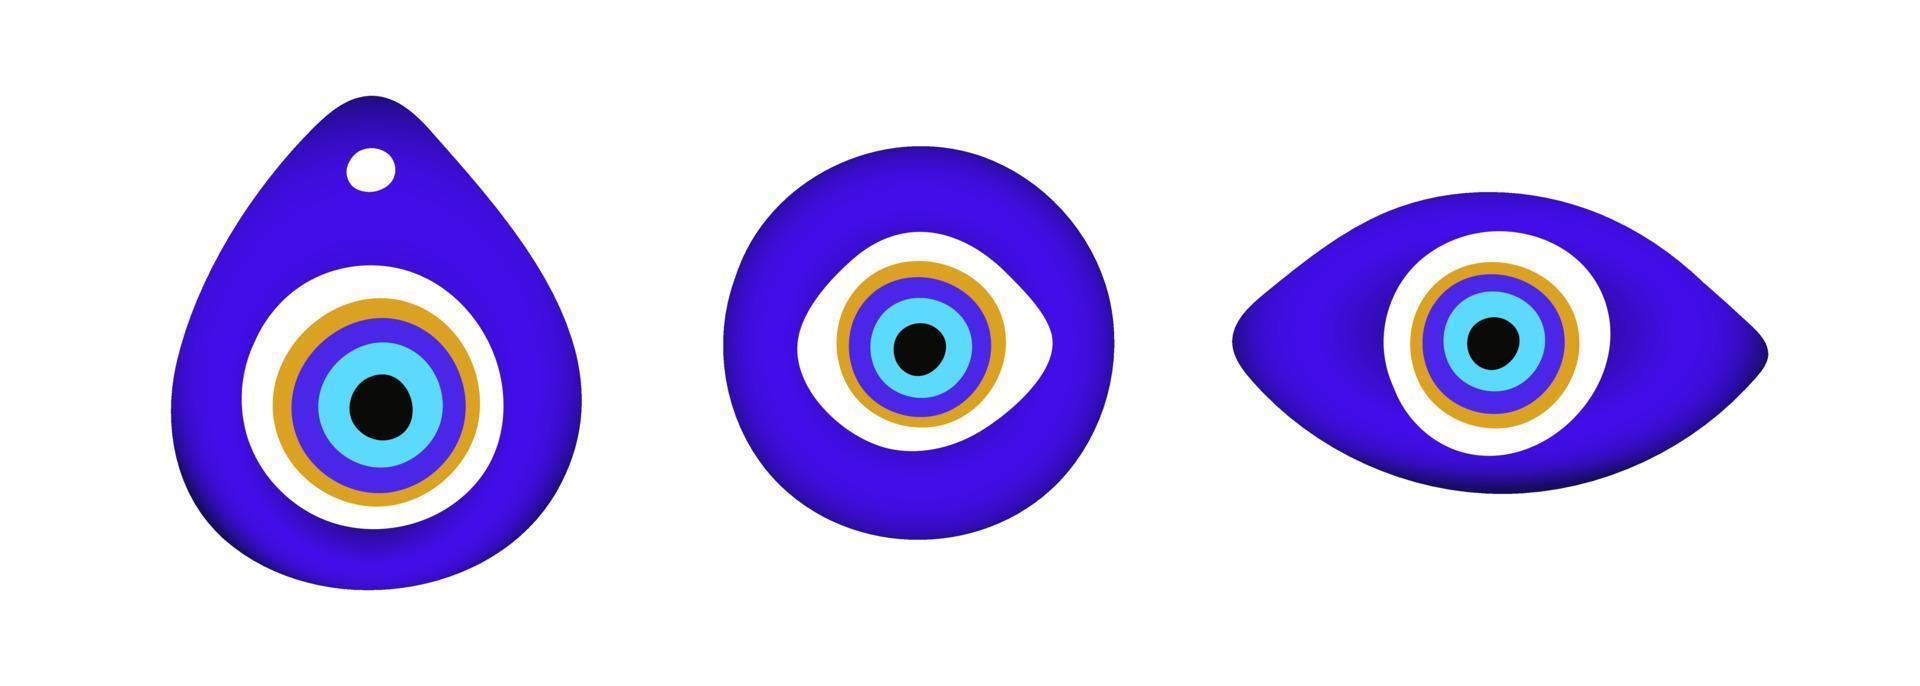 azul oriental mal de ojo símbolo amuleto estilo plano diseño vector ilustración aislado sobre fondo blanco.